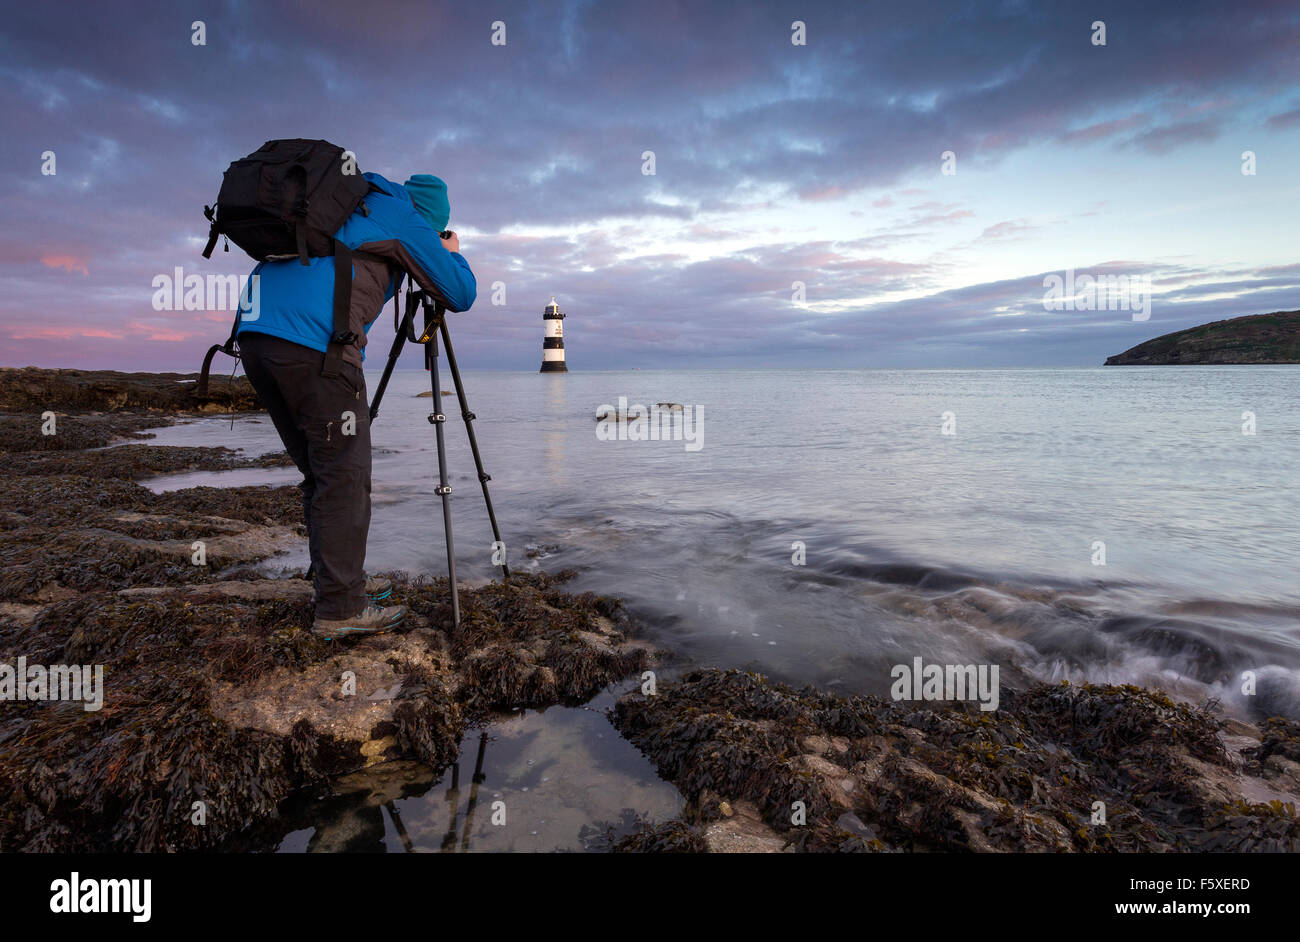 Fotografo in piedi sul litorale di fotografare un faro e seascape all'alba utilizzando un treppiede fotocamera montata Foto Stock